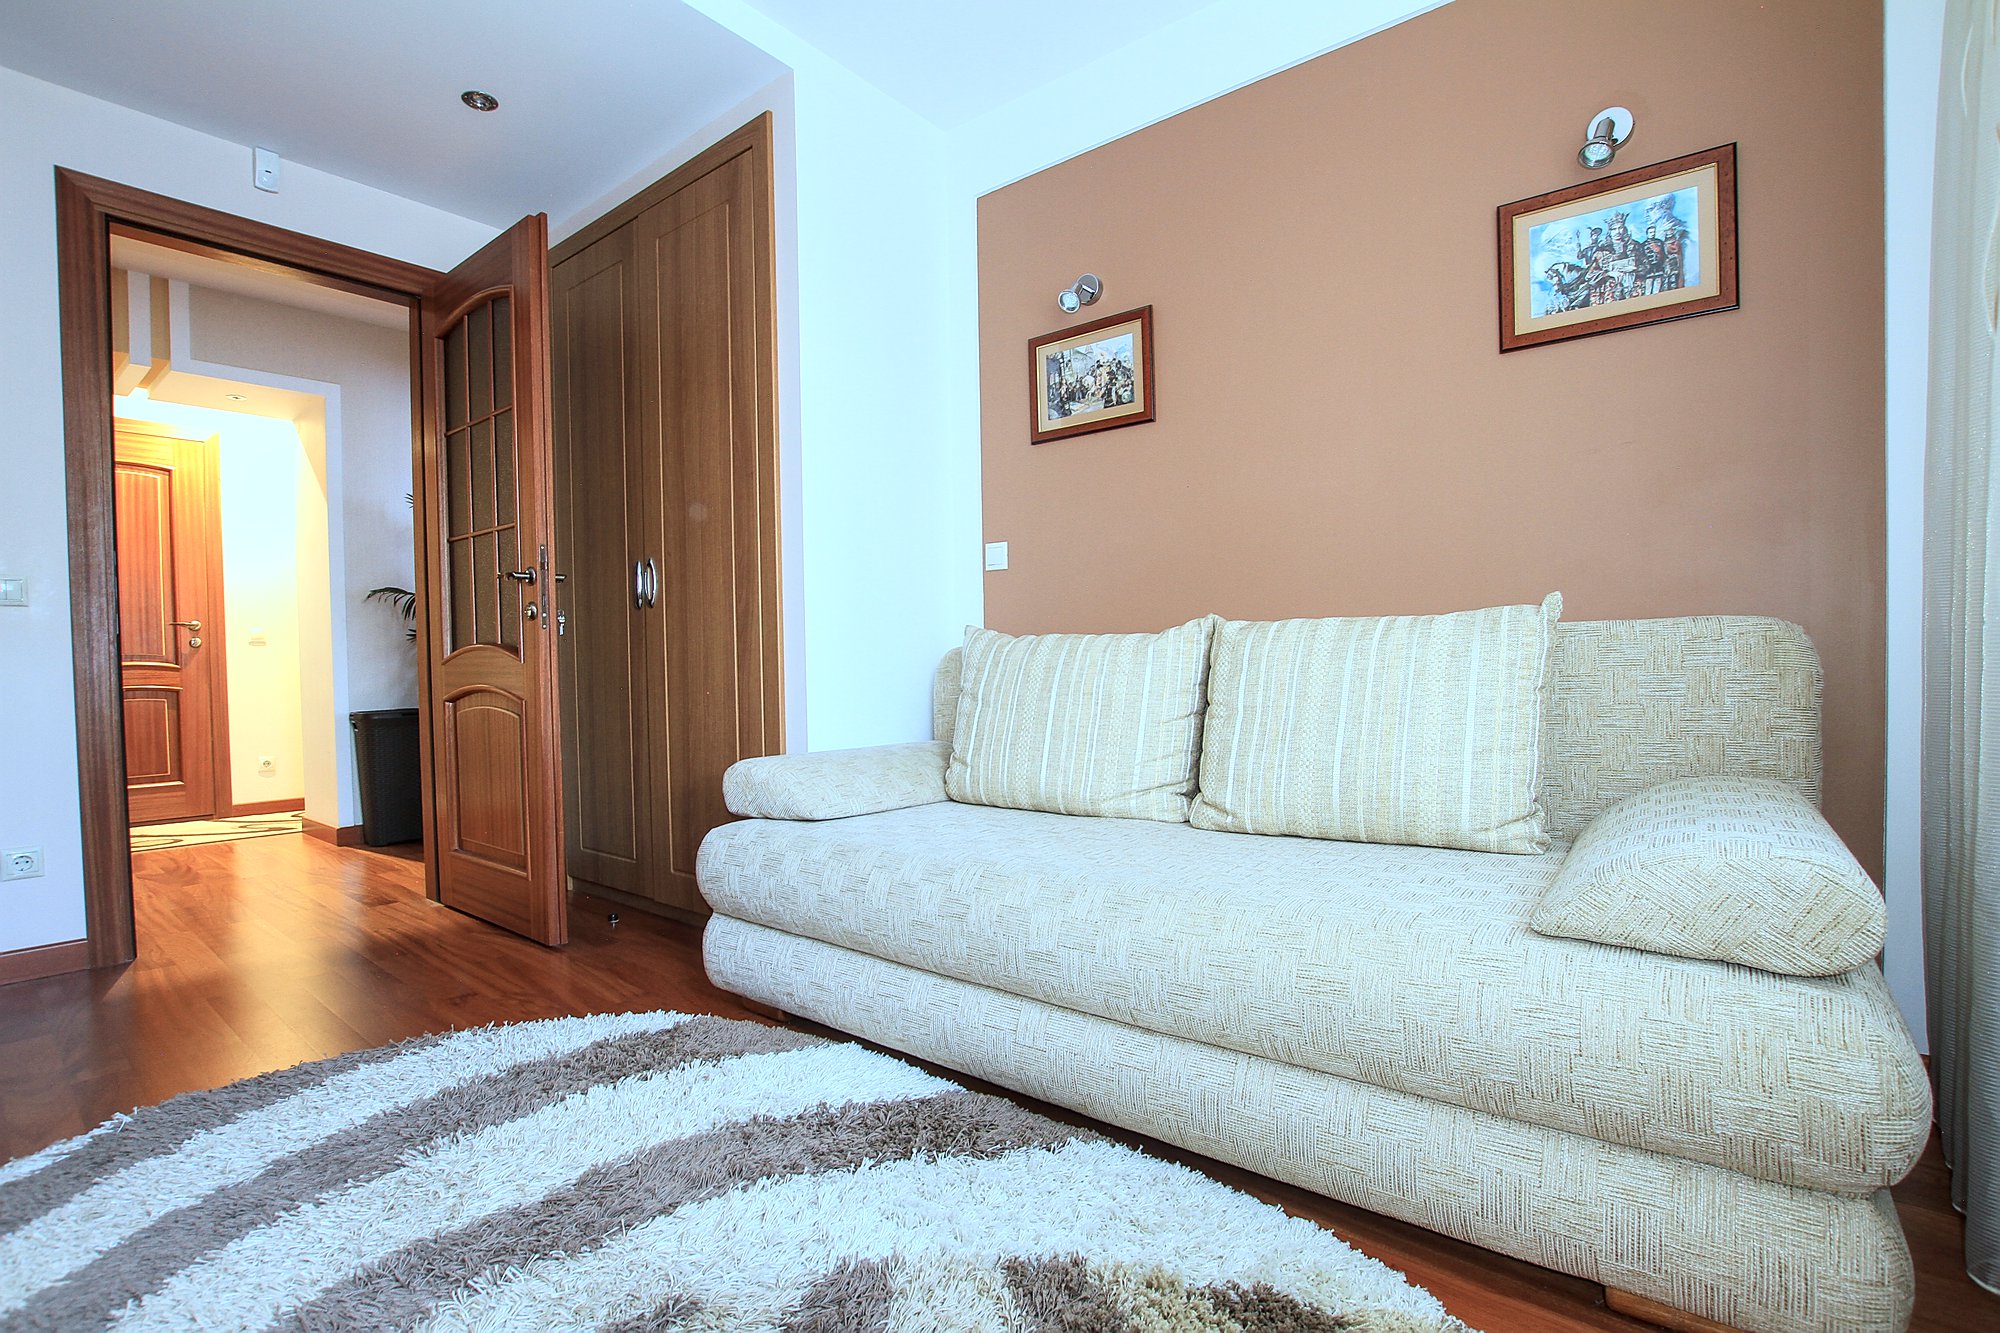 Botanica Family Apartment è un appartamento di 3 stanze in affitto a Chisinau, Moldova